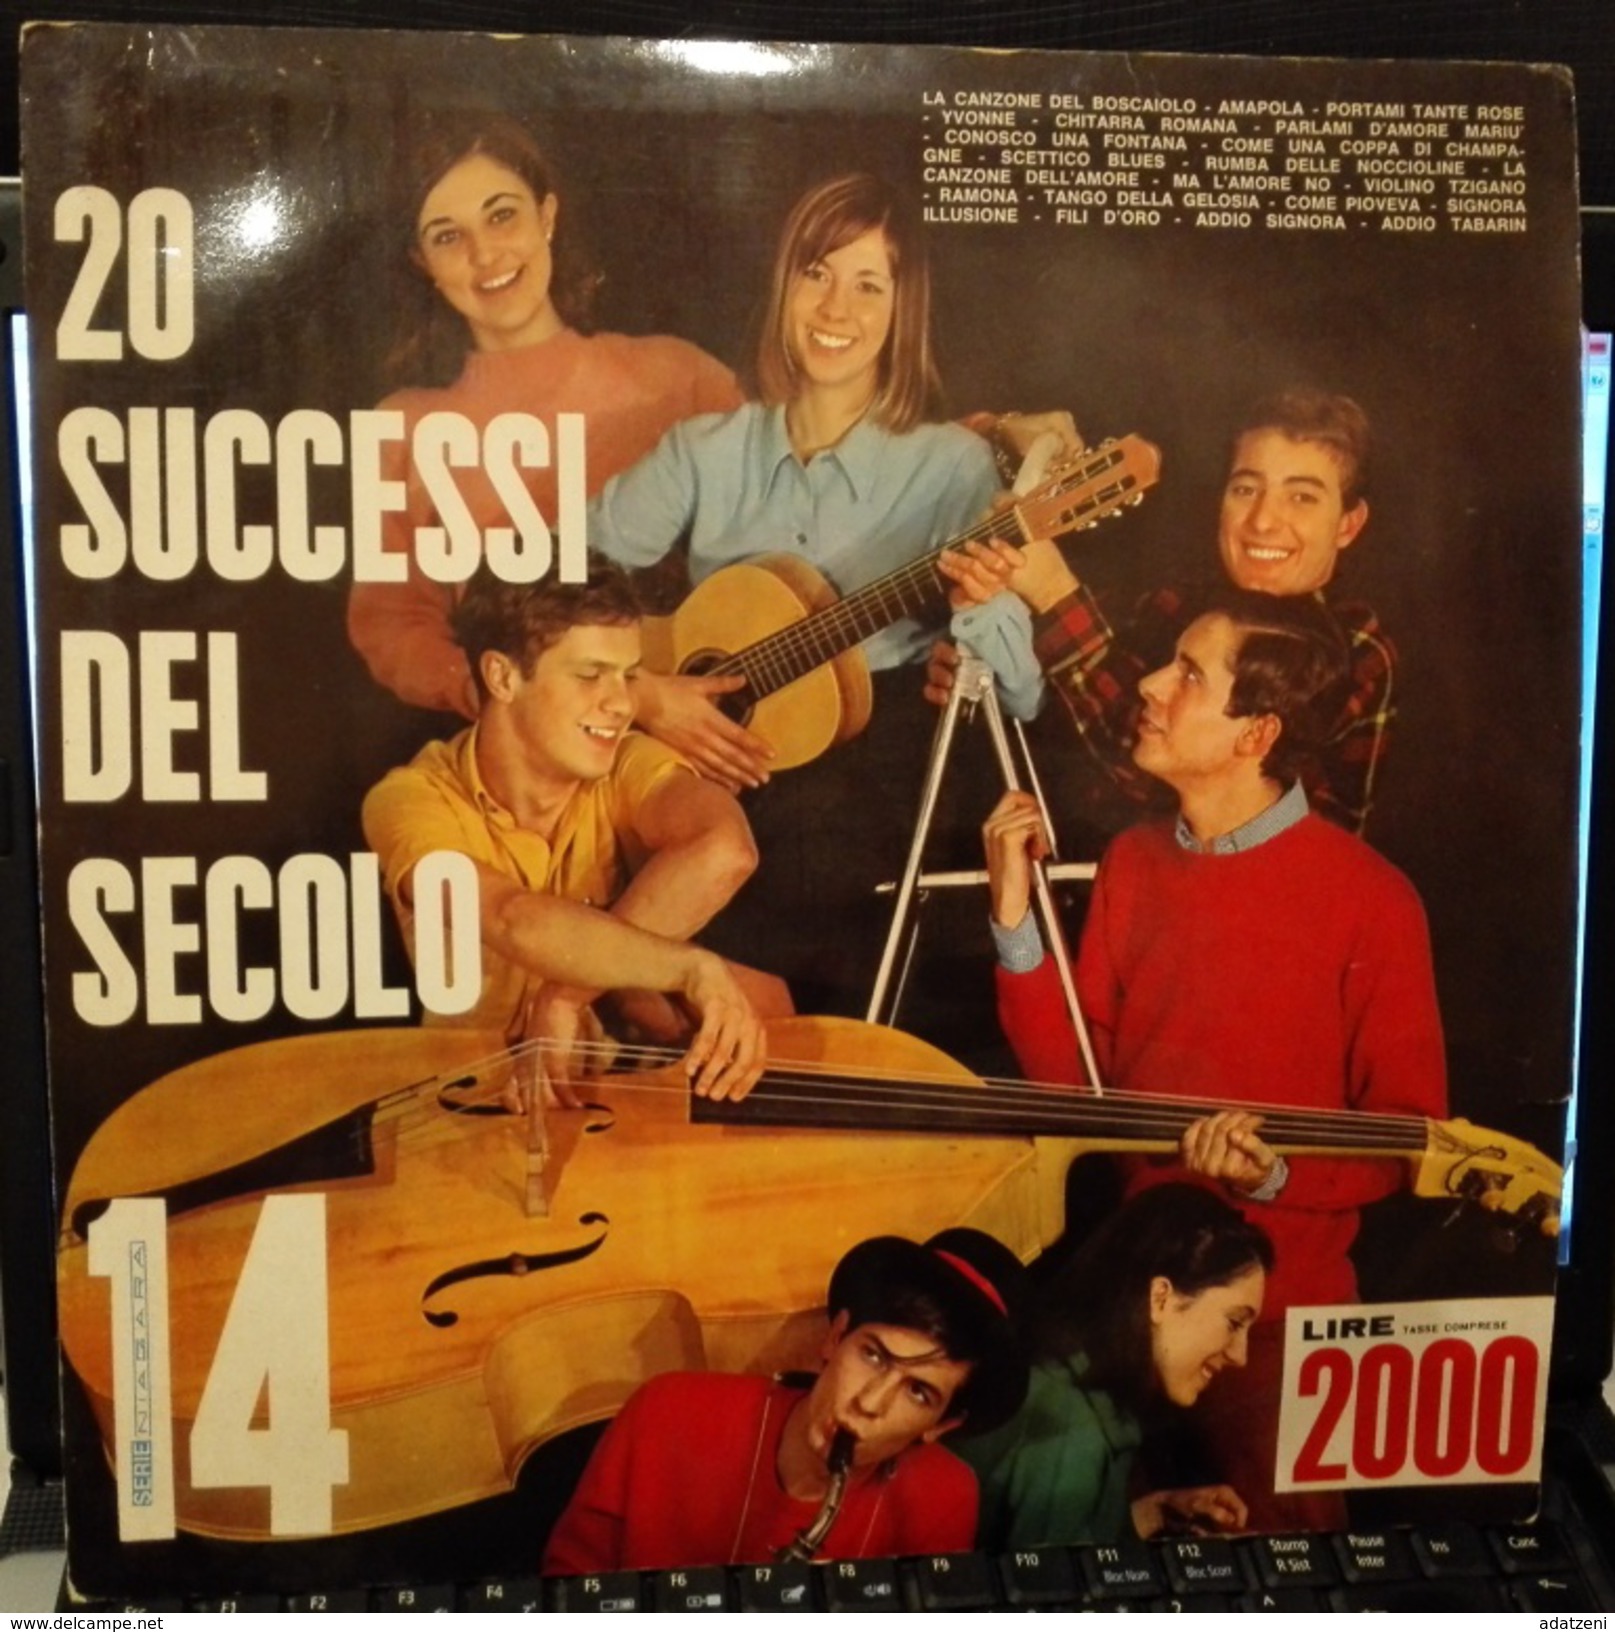 20 SUCCESSI DEL SECOLO NIAGARA 14 Disco LP TONY ARDEN GIUSY VITTORIO VITTI MARIO BATTAINI - Other - Italian Music